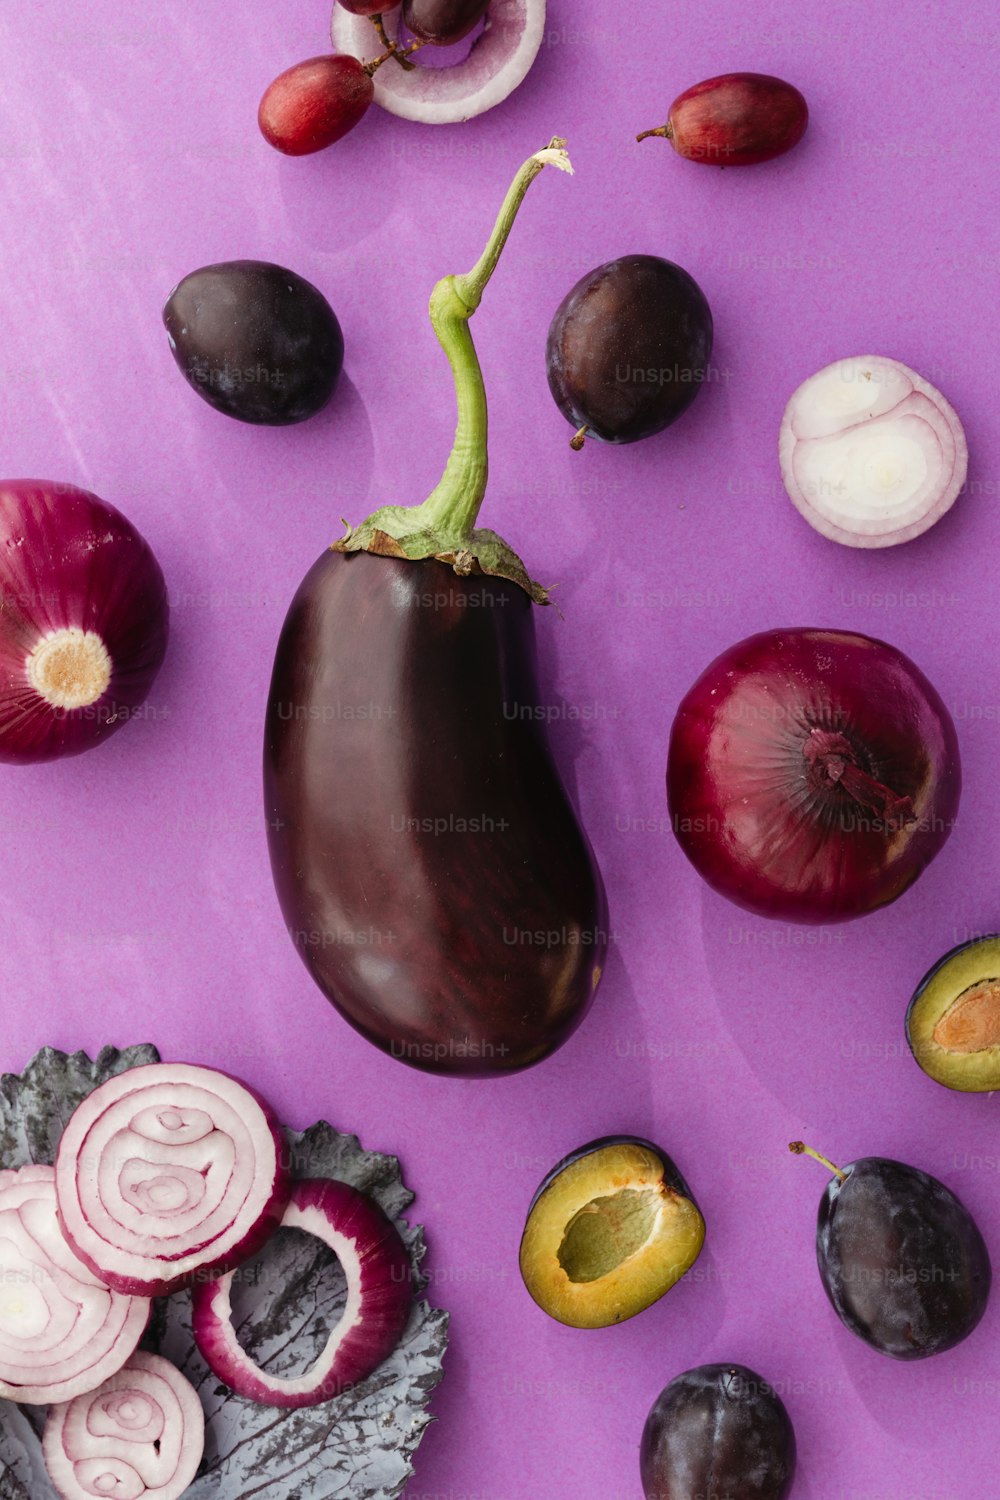 una berenjena, cebolla, rodajas de cebolla y otras verduras en un púrpura